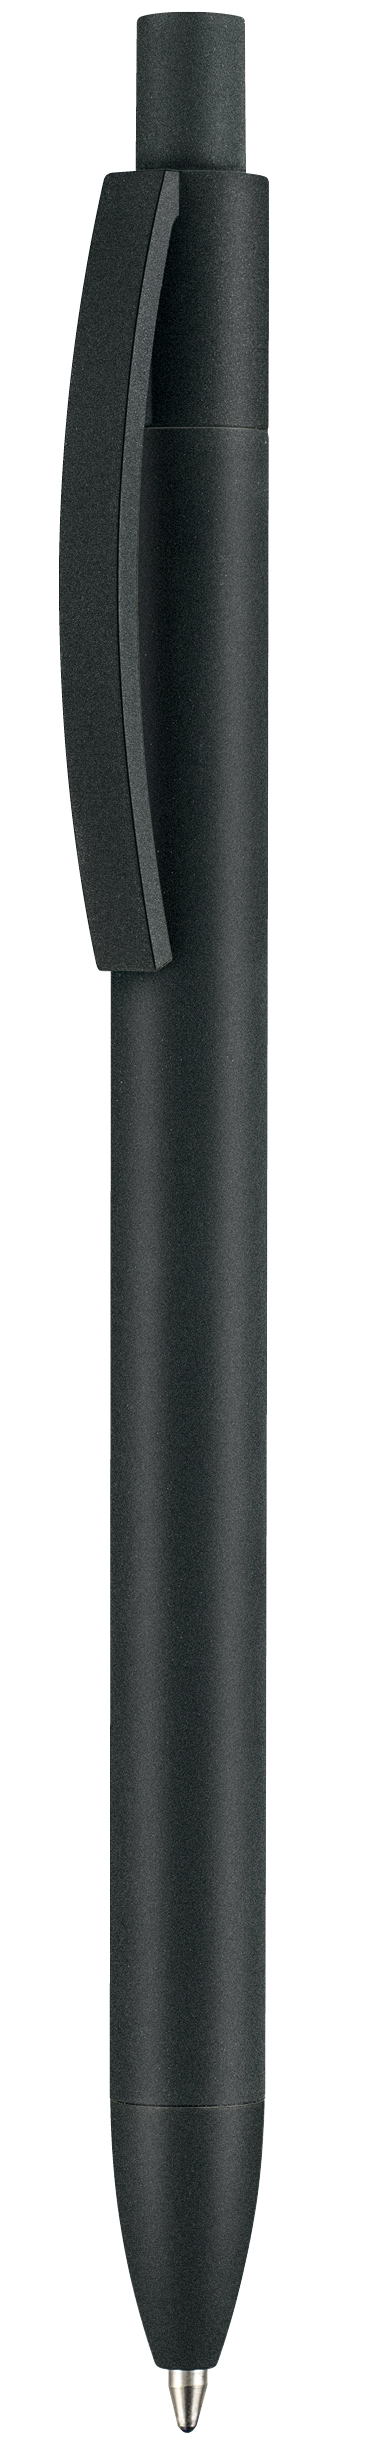 Kugelschreiber 69910 Capri Soft Black | Ritter-Pen GmbH